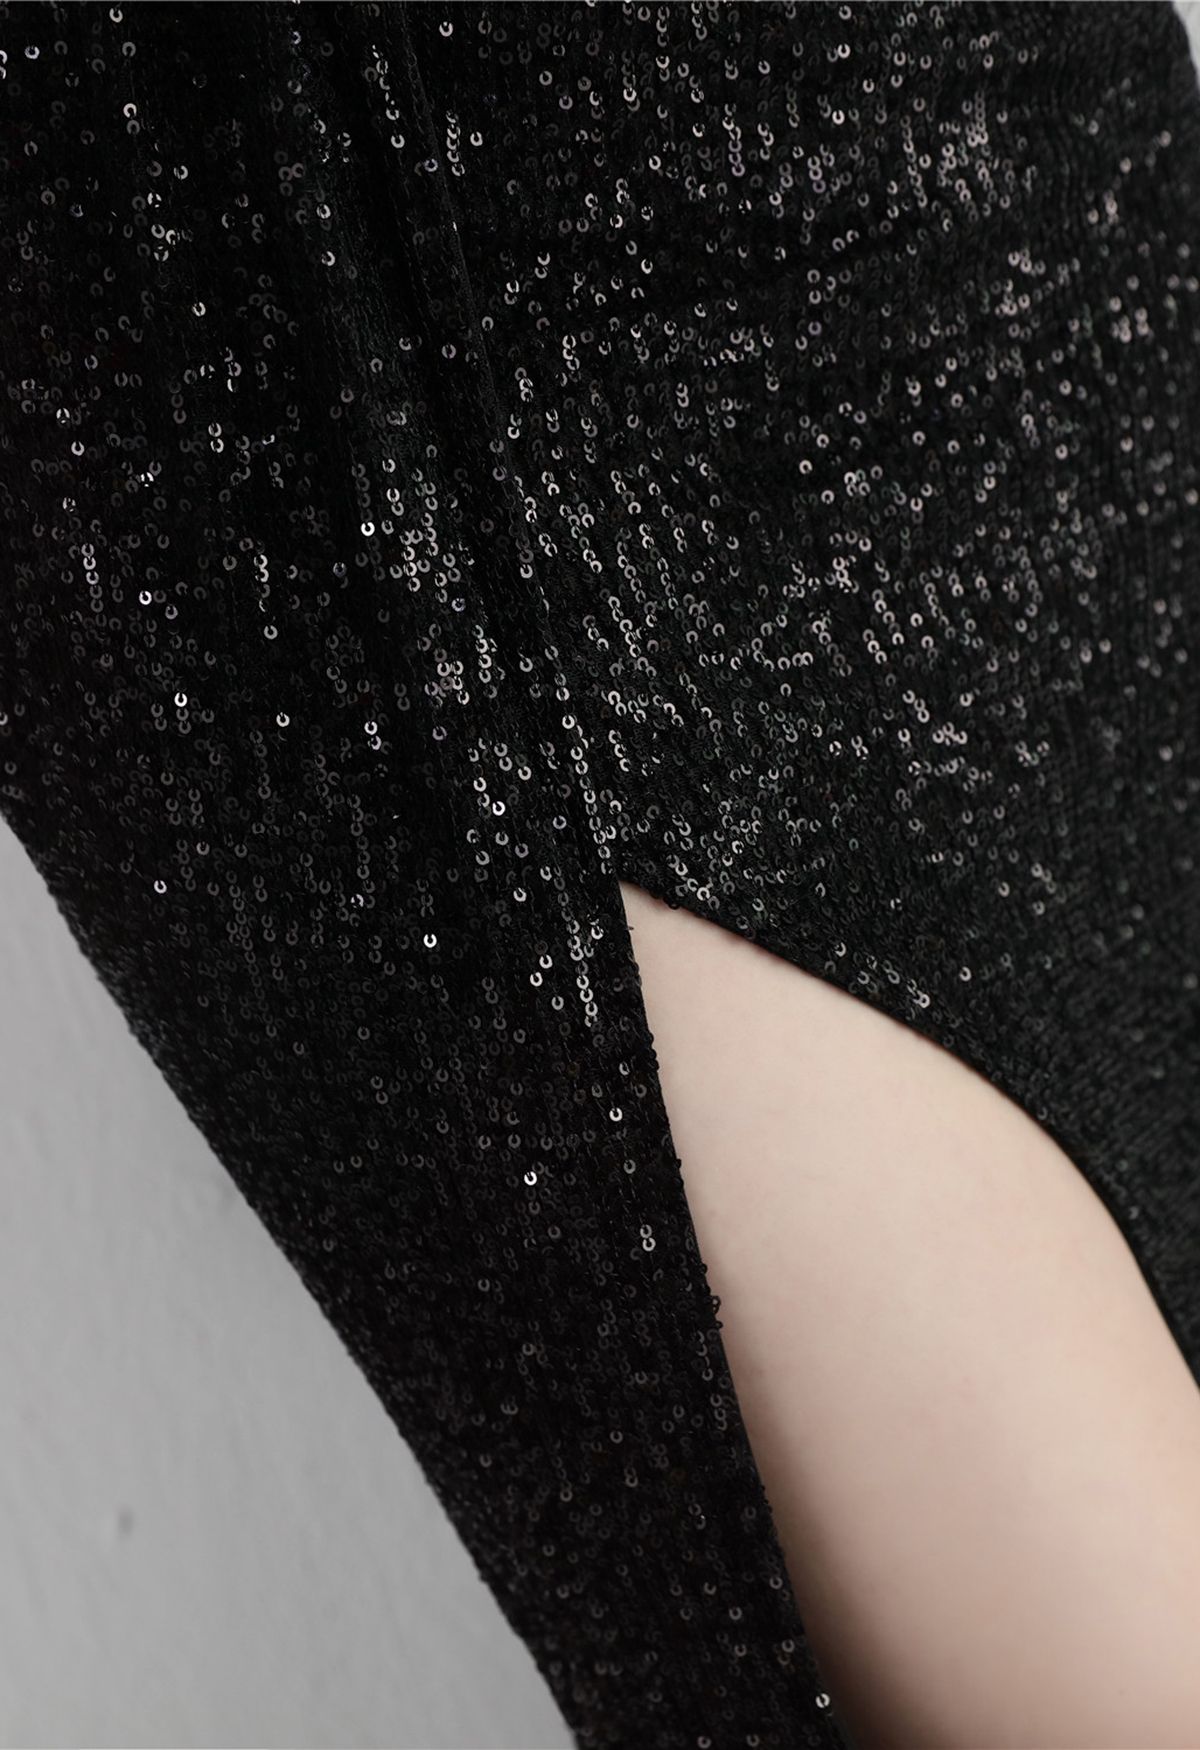 One Shoulder Sequins High Slit Gown in Black